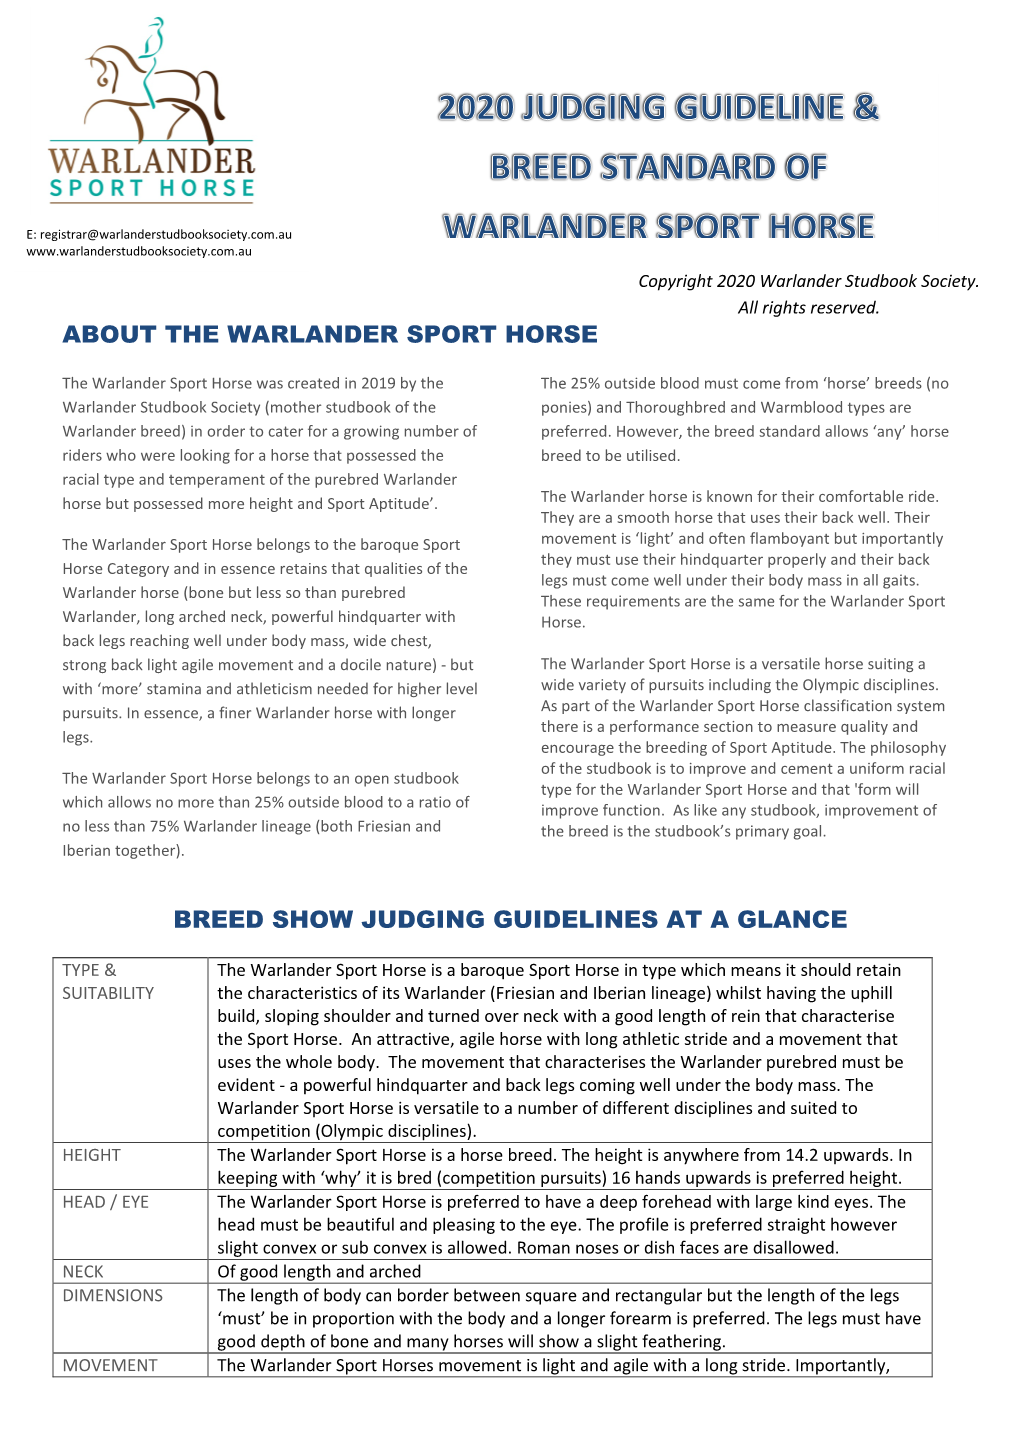 DOWNLOAD Warlander Sport Horse Breed Standard & Judging Guideline